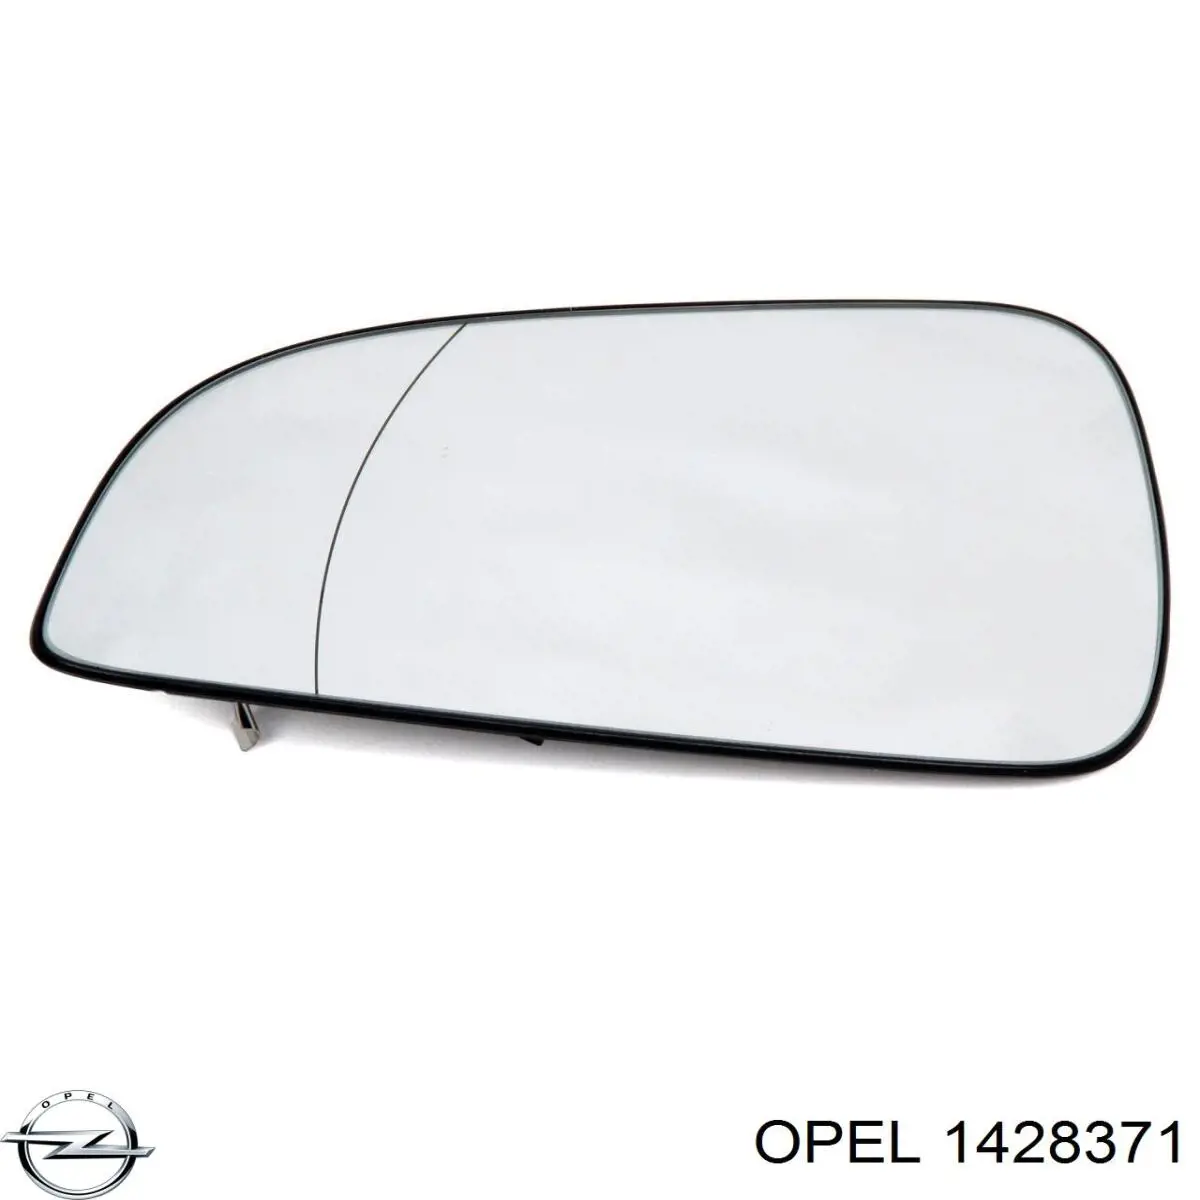 1428371 Opel elemento espelhado do espelho de retrovisão direito